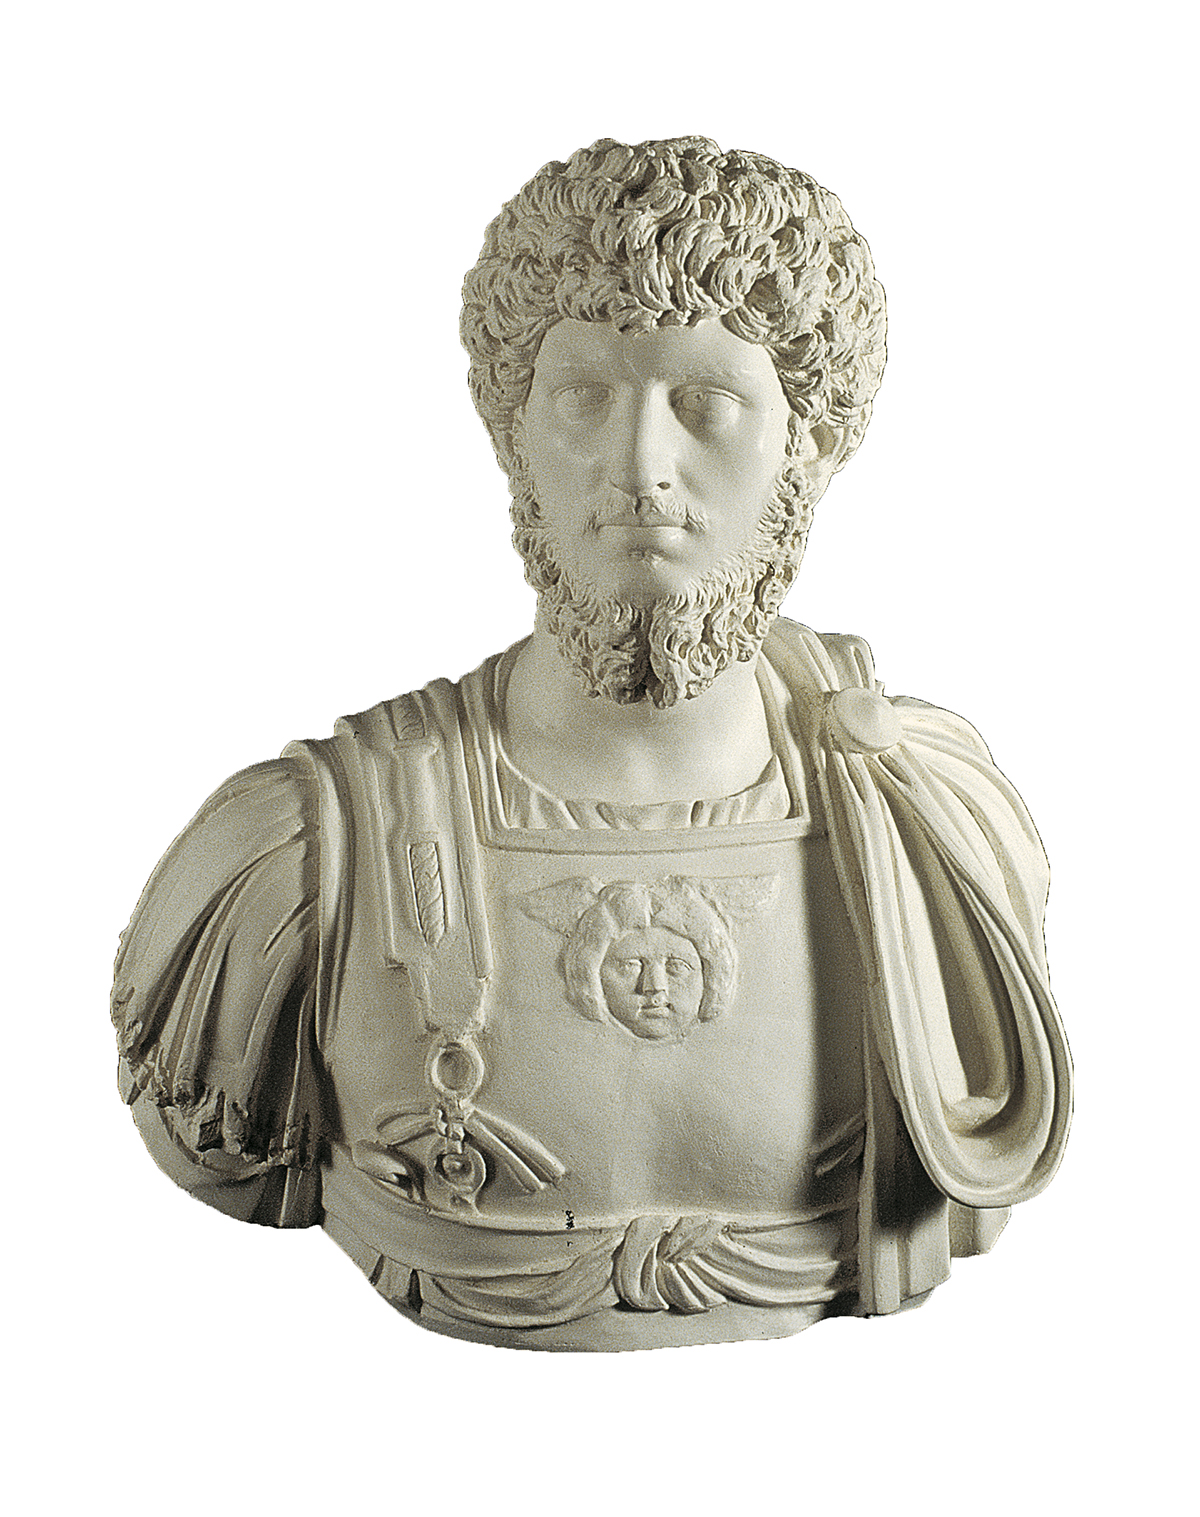 Portrait of Lucius Aurelius Vero (cast in plaster)